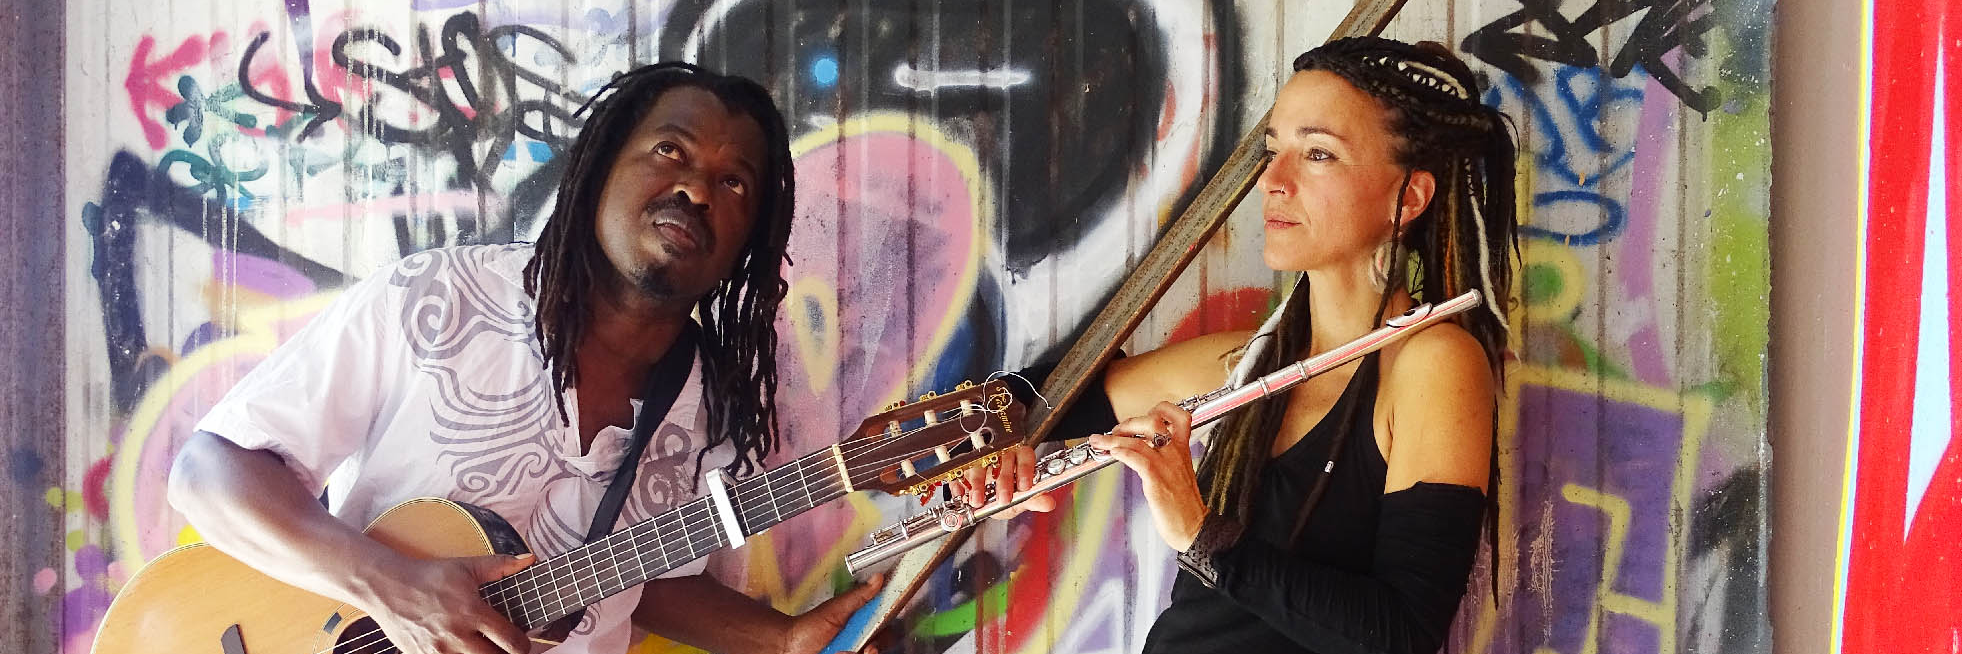 Cândido & Cécilia, musicien Afro en représentation à Hérault - photo de couverture n° 1